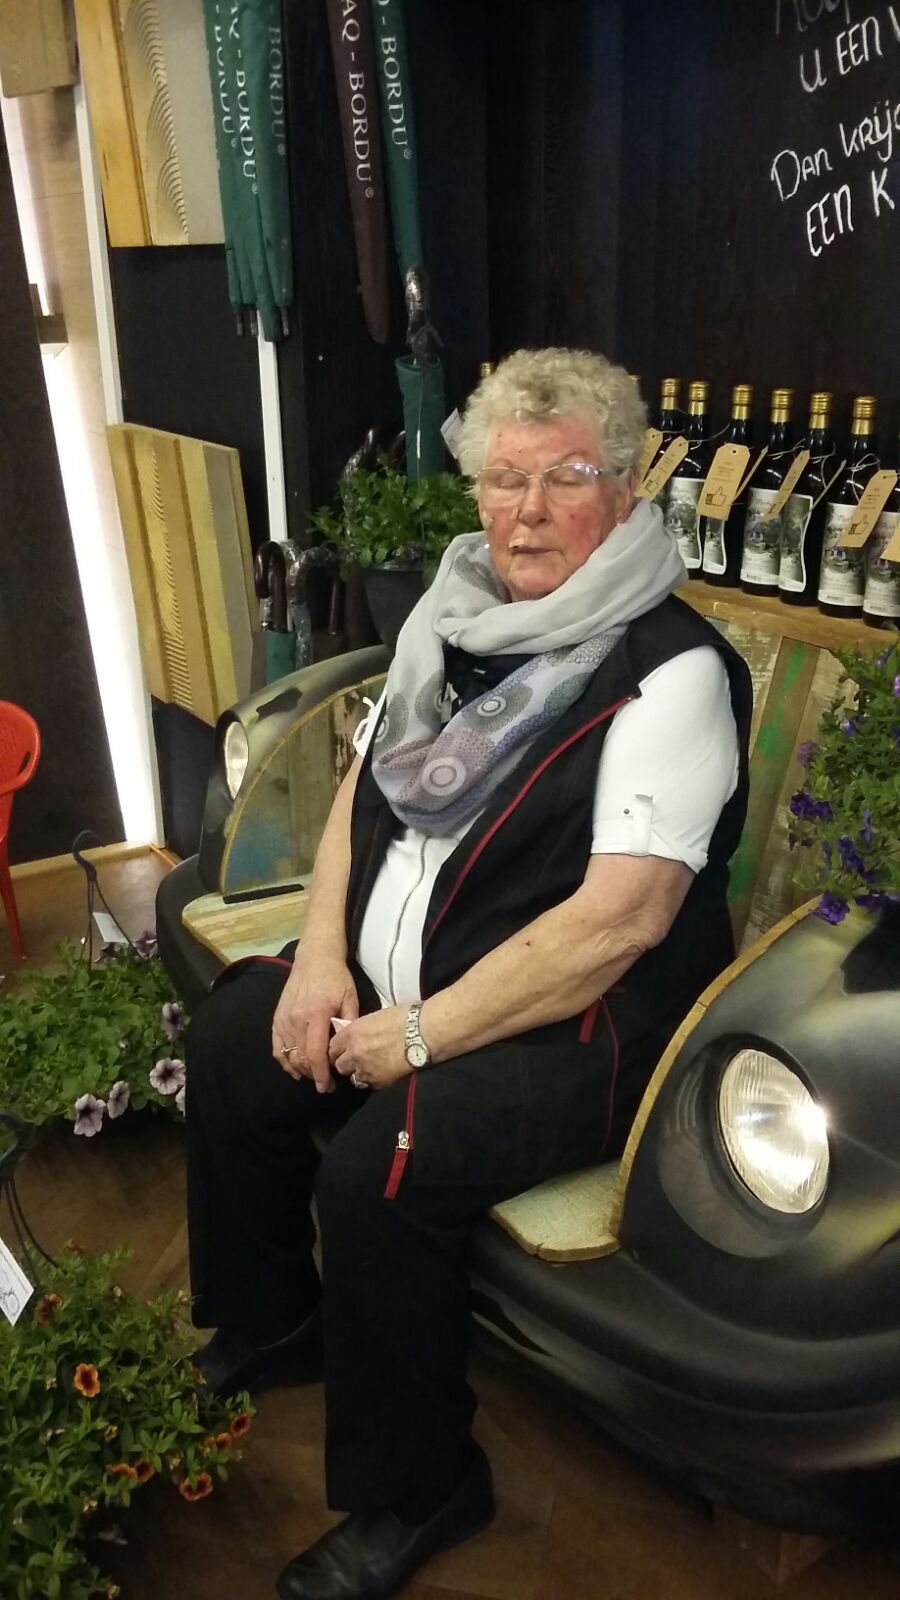 Mevrouw poldermans uit alkmaar gaat tevreden naar huis met een mooie restpartij laminaat.